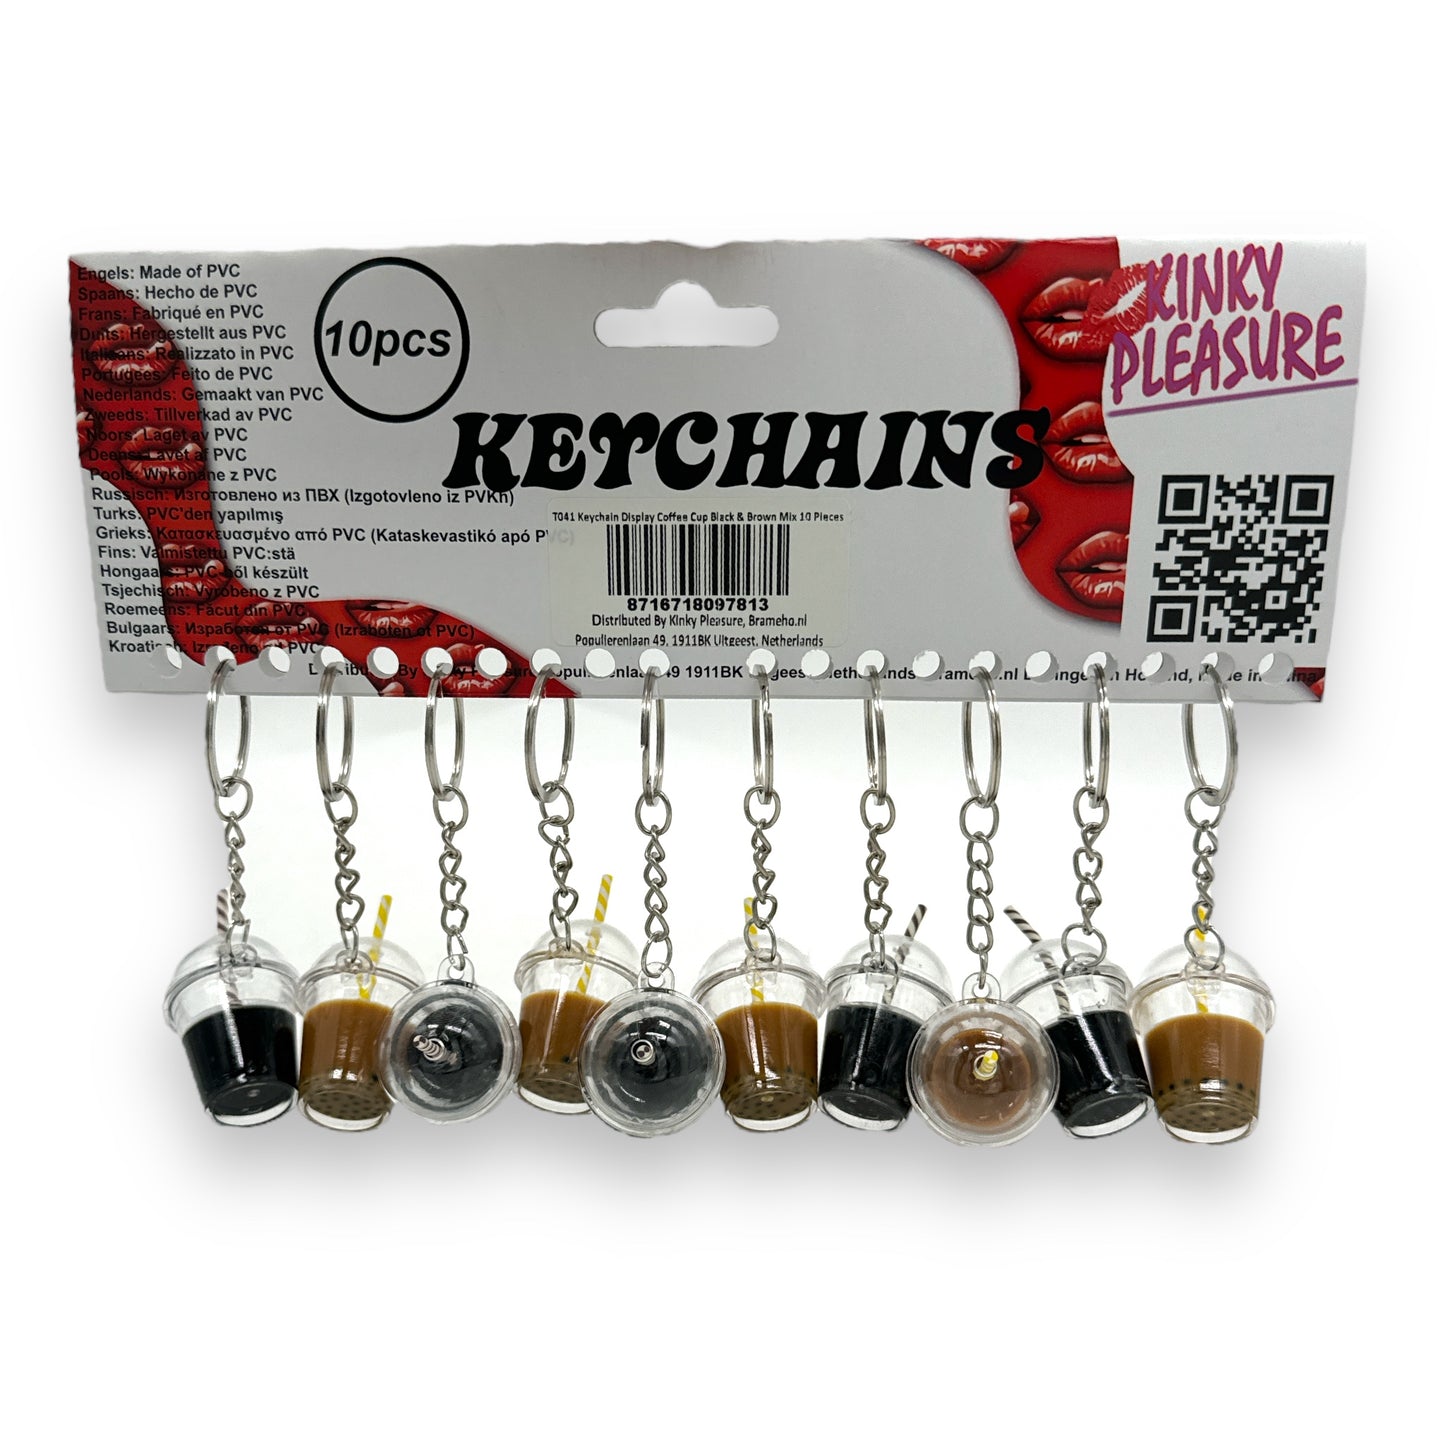 Kinky Pleasure - T041 - Keychain Coffe Cups - 2 Models